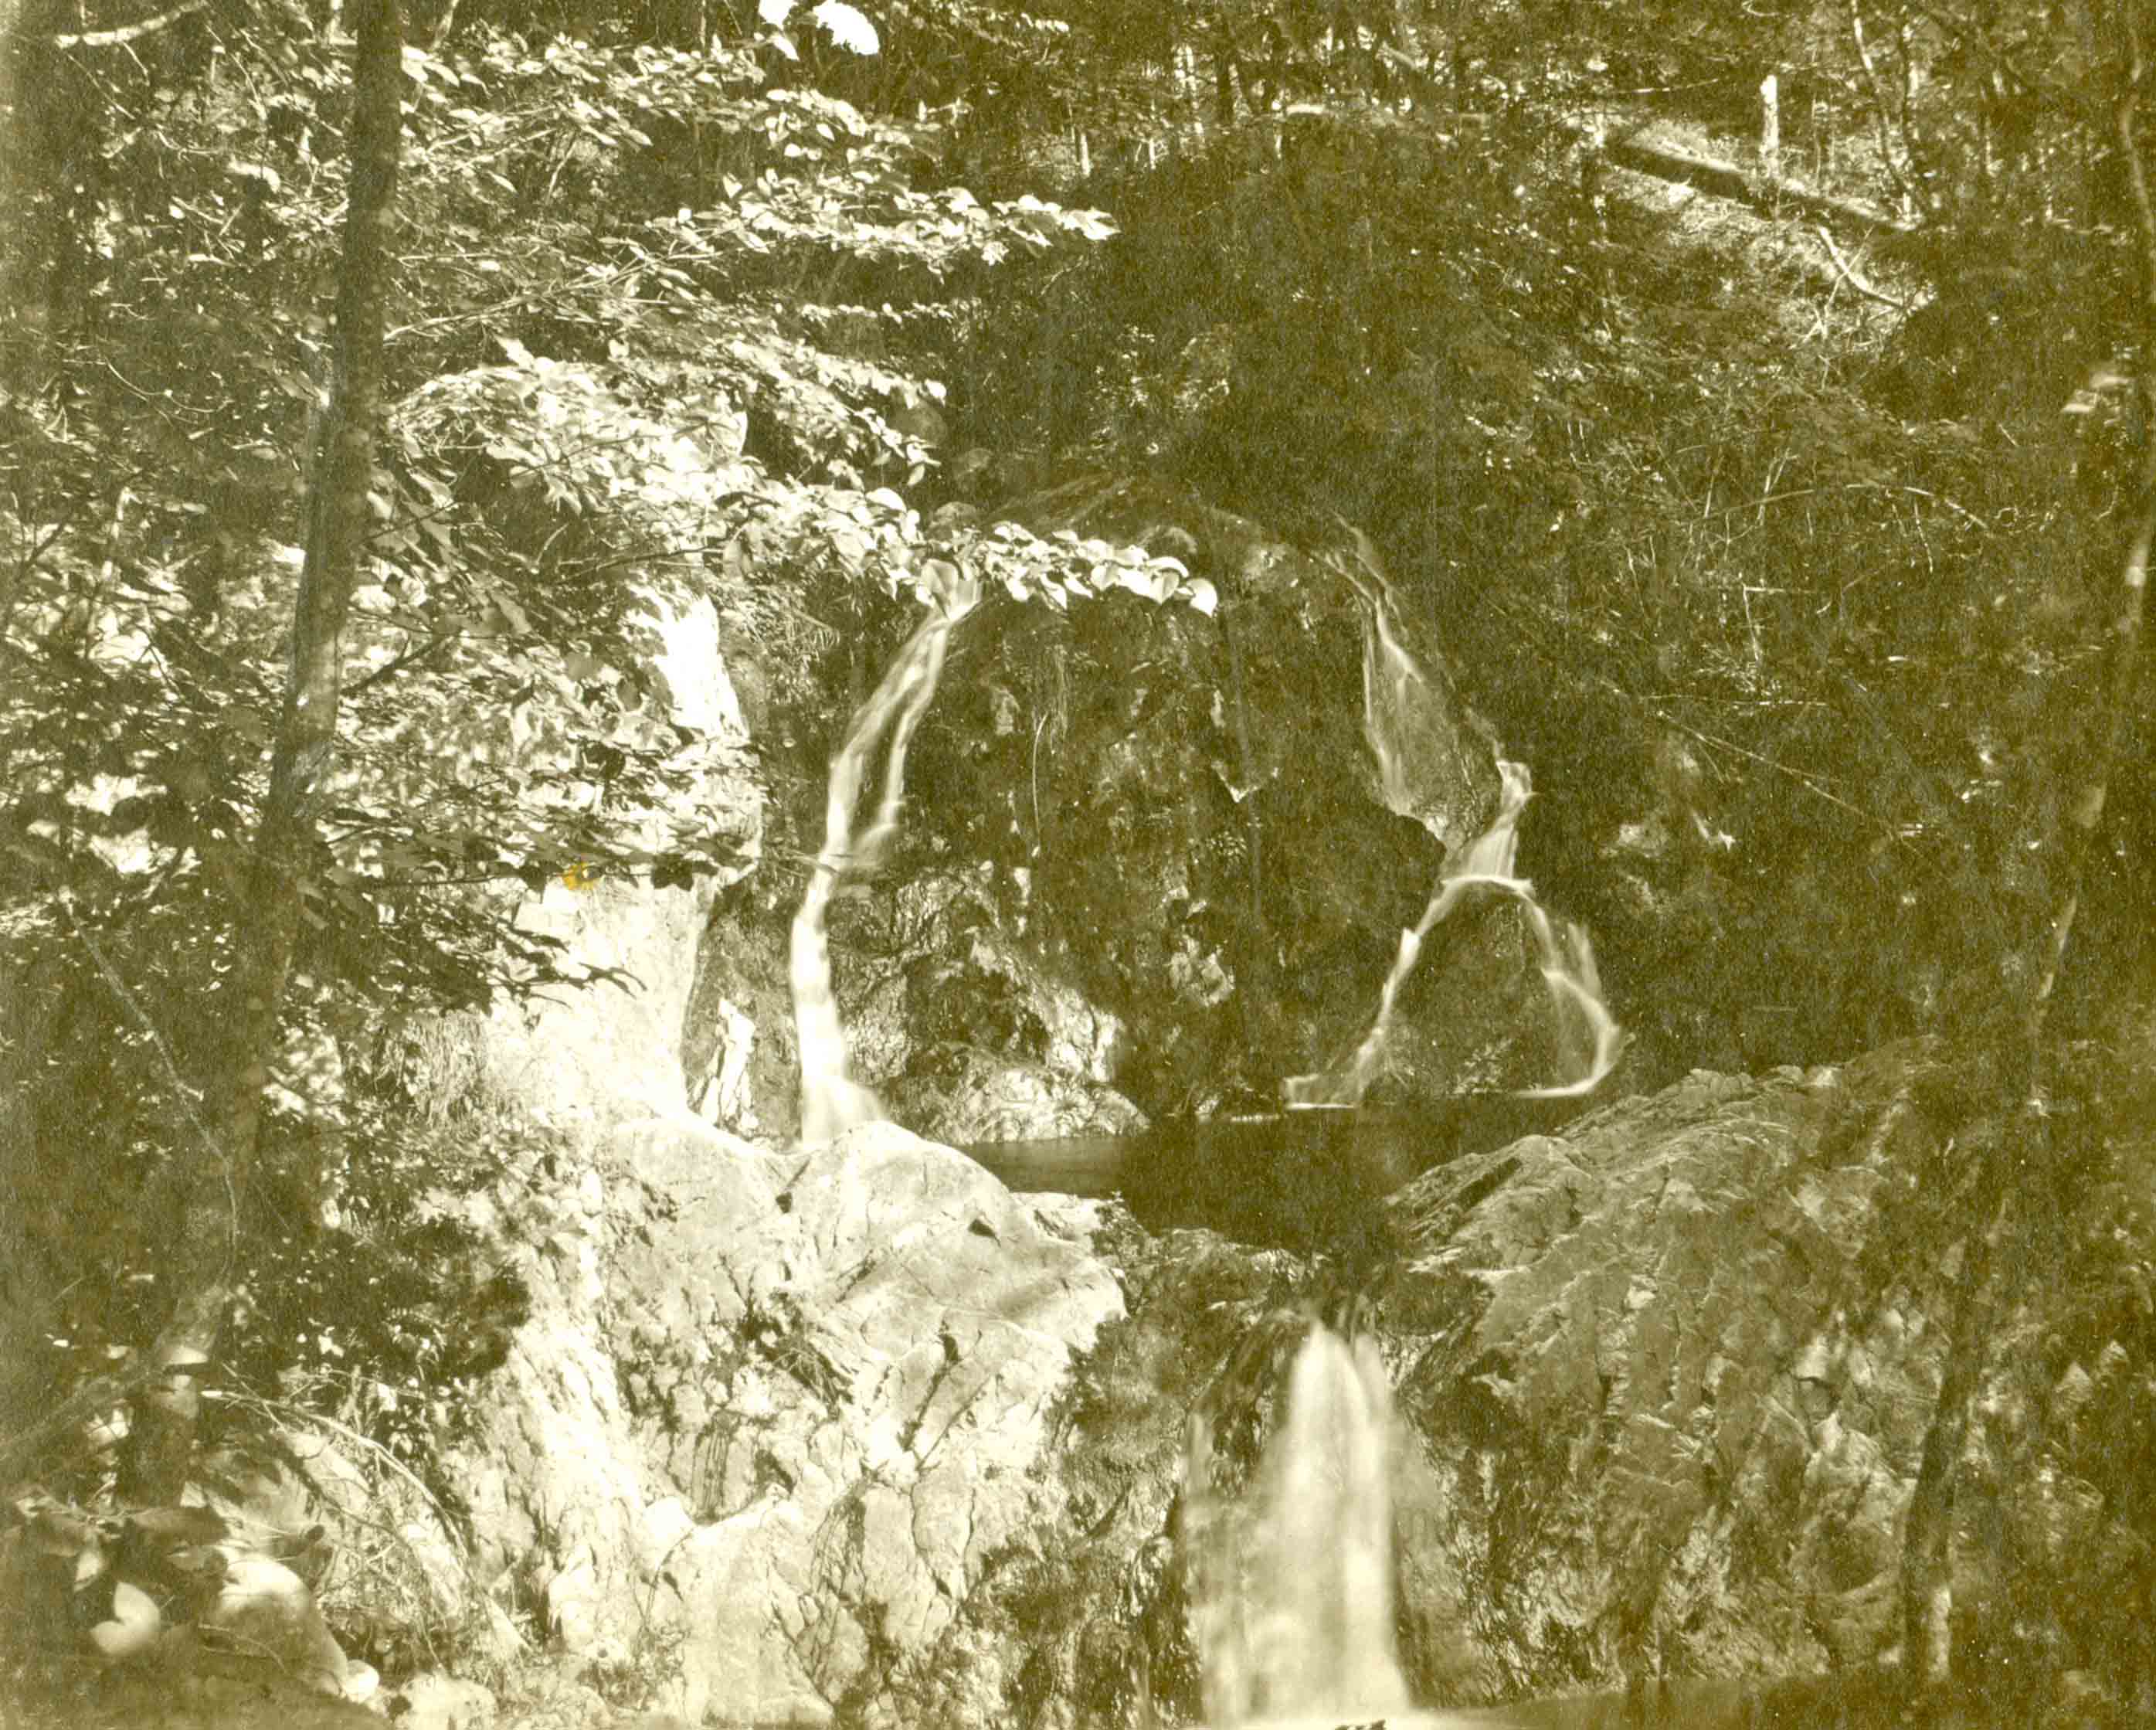 Upper Falls 1898-99